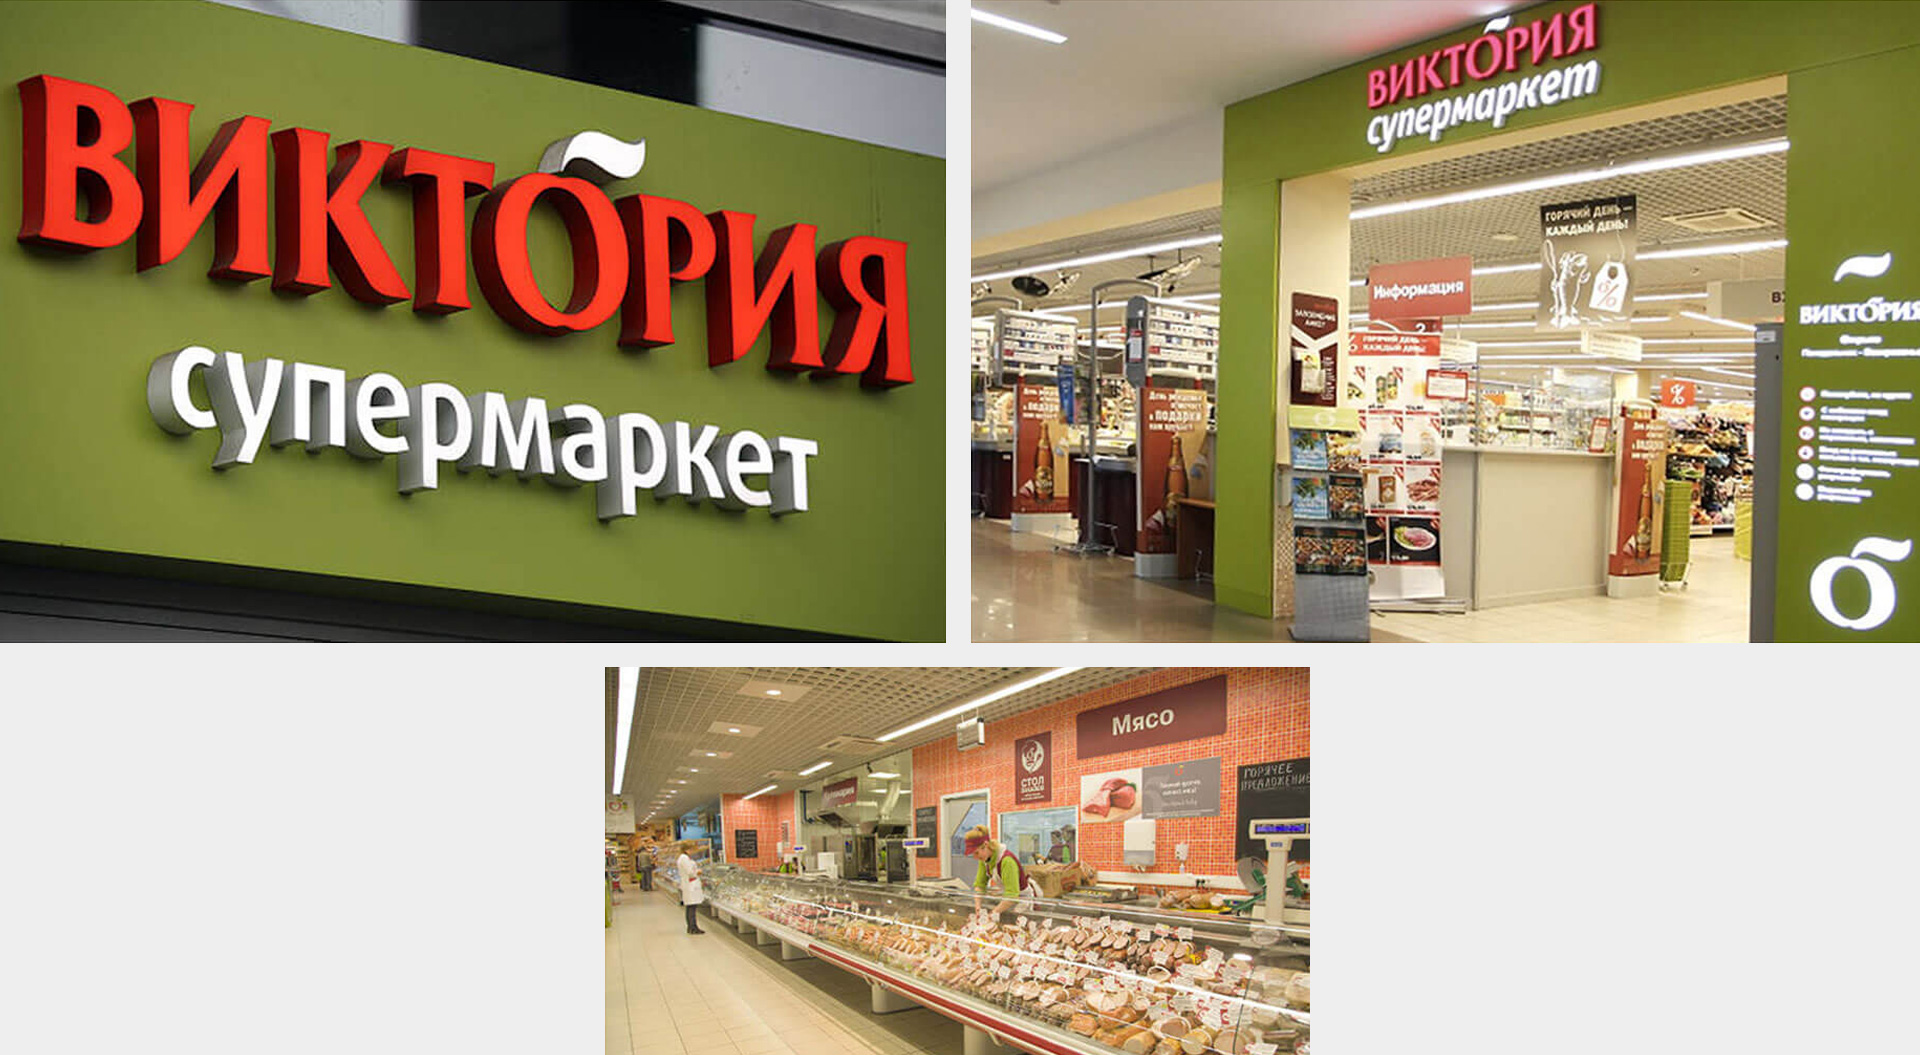 Victoria supermarkets Russia store entrance and interior delicatessen counter